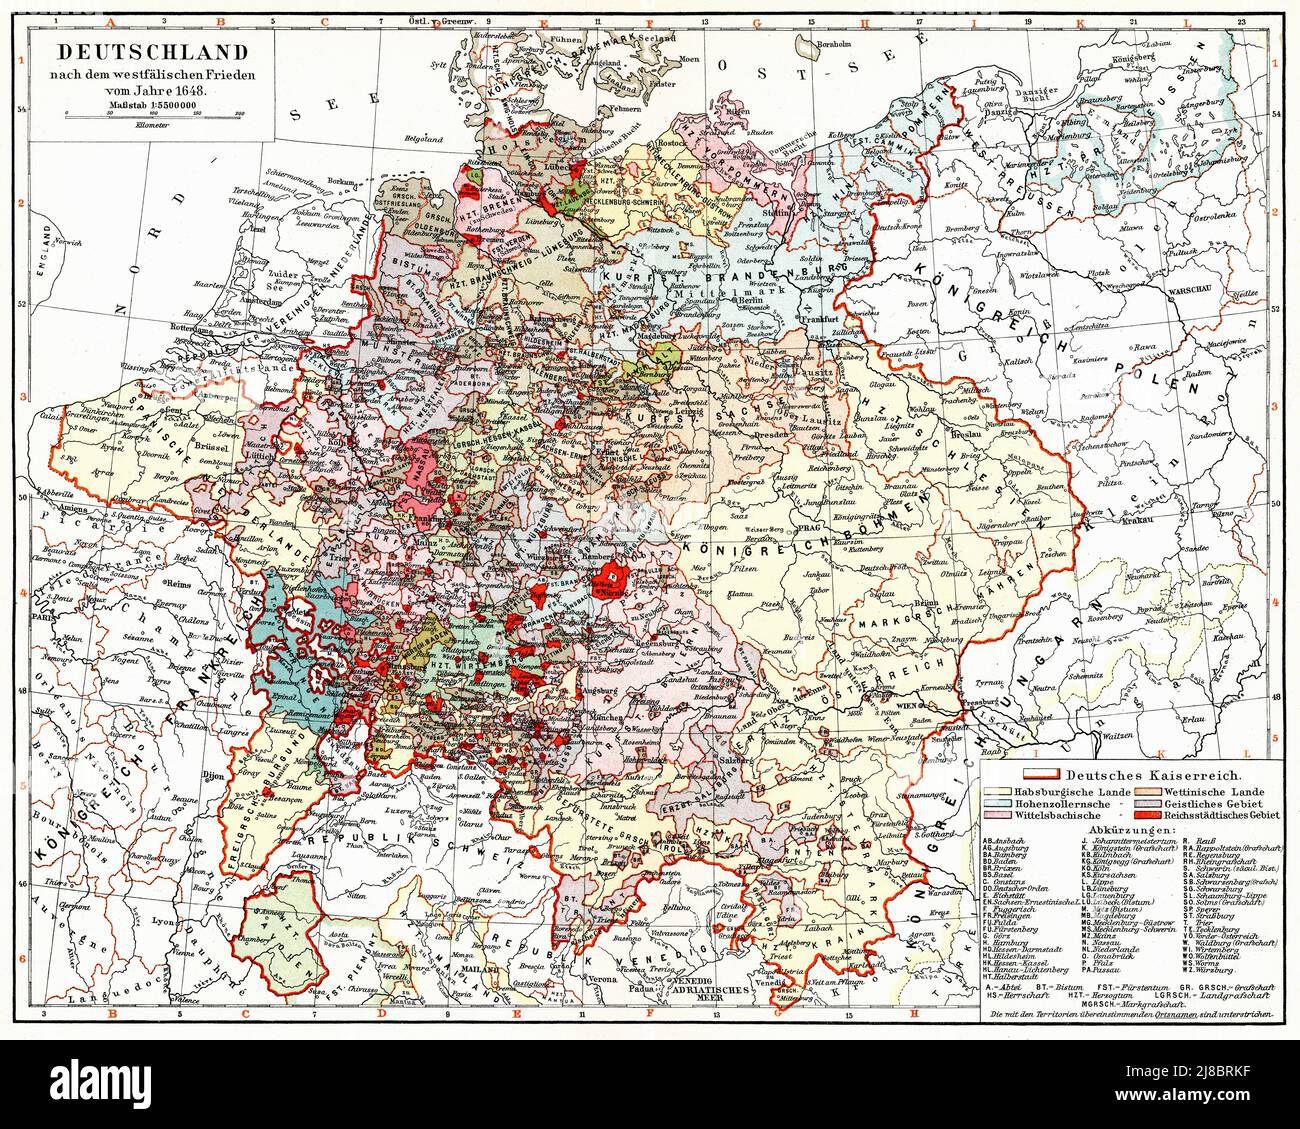 Mapa de Alemania después de la Paz de Westfalia de 1648. Publicación del libro 'Meyers Konversations-Lexikon', Volumen 2, Leipzig, Alemania, 1910 Foto de stock